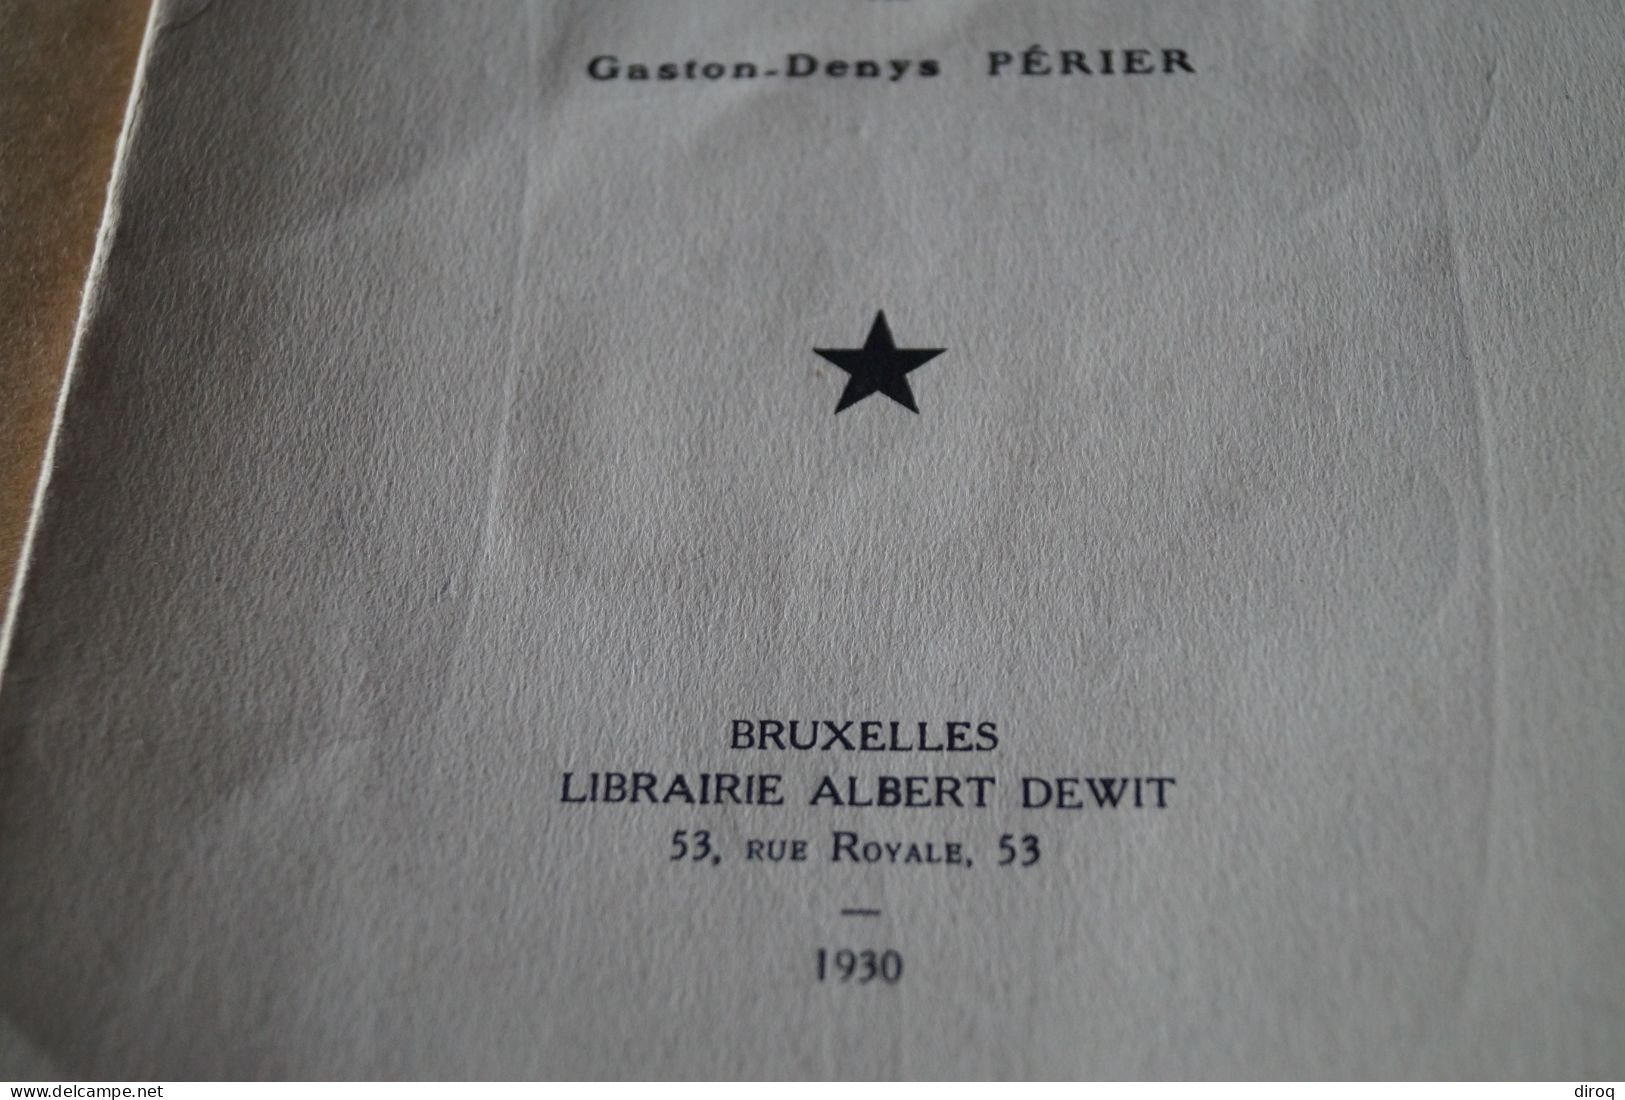 Congo Belge,1930,notes De Littérature Coloniale,Gaston-Denys Périer,54 Pages,25,5 Cm. Sur 17 Cm. - Sin Clasificación